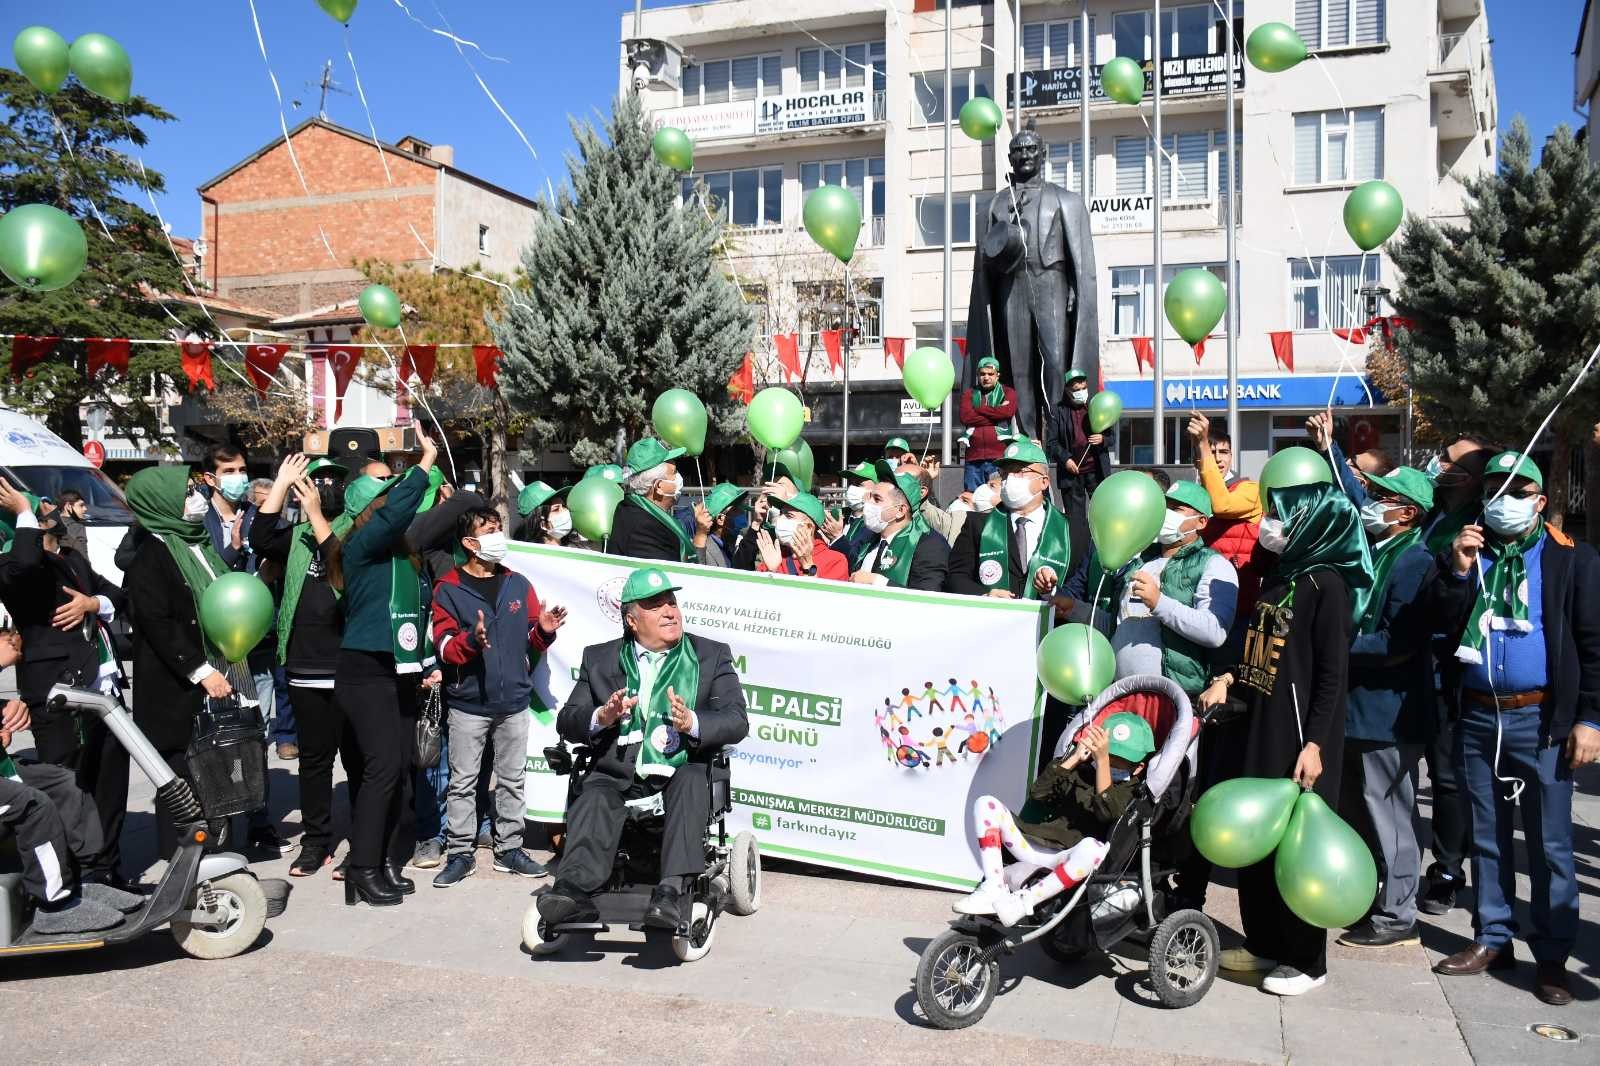 Aksaray’da “Dünya Yeşile Boyanıyor” adlı farkındalık yürüyüşü yapıldı #aksaray